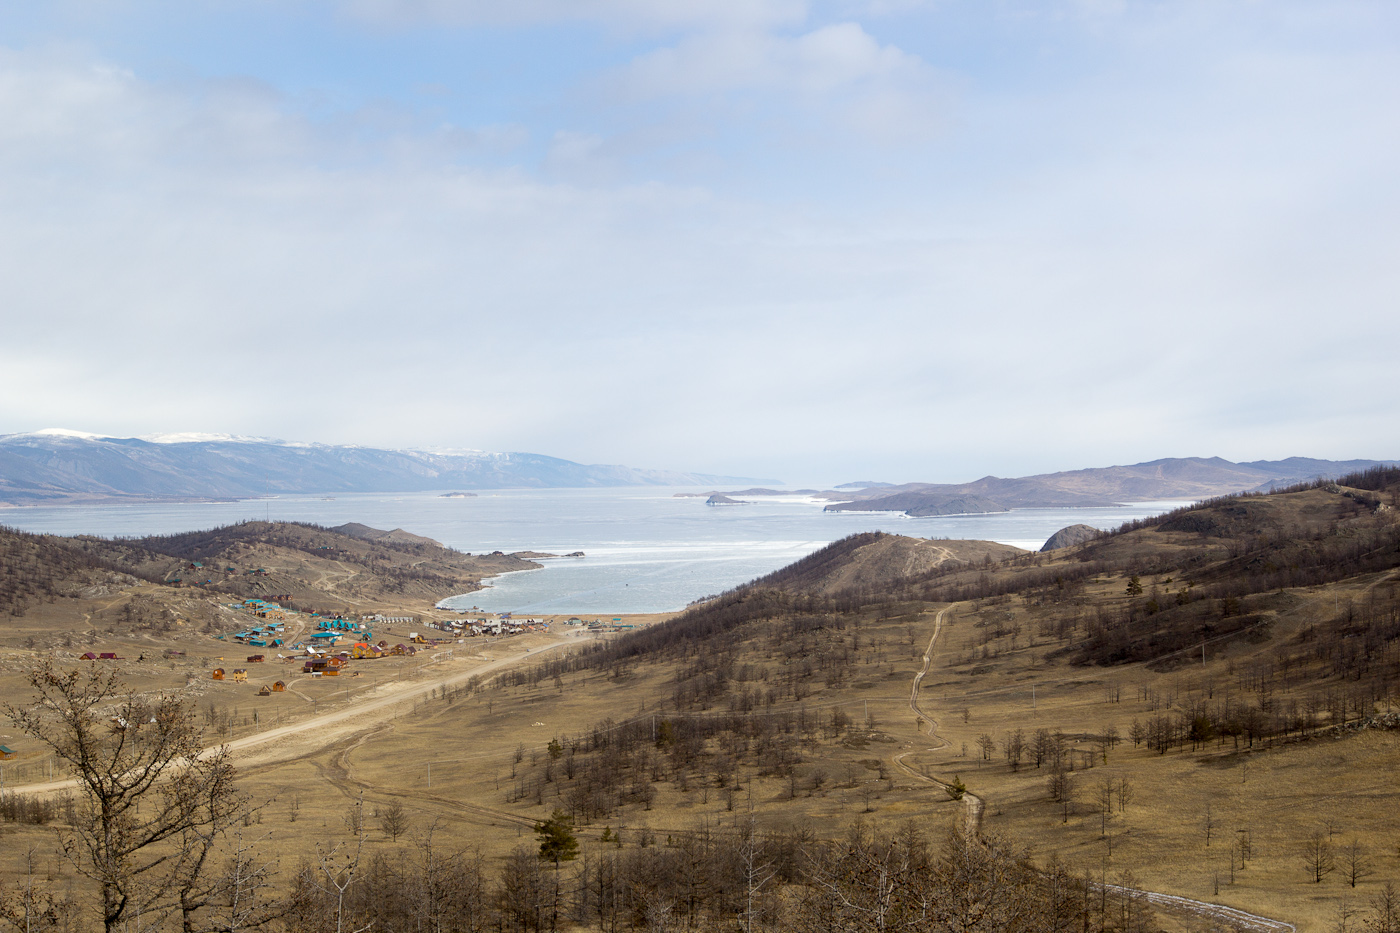 Байкал: Ольхон - дорога в Иркутск, ледовая переправа, что осталось IMG_0566